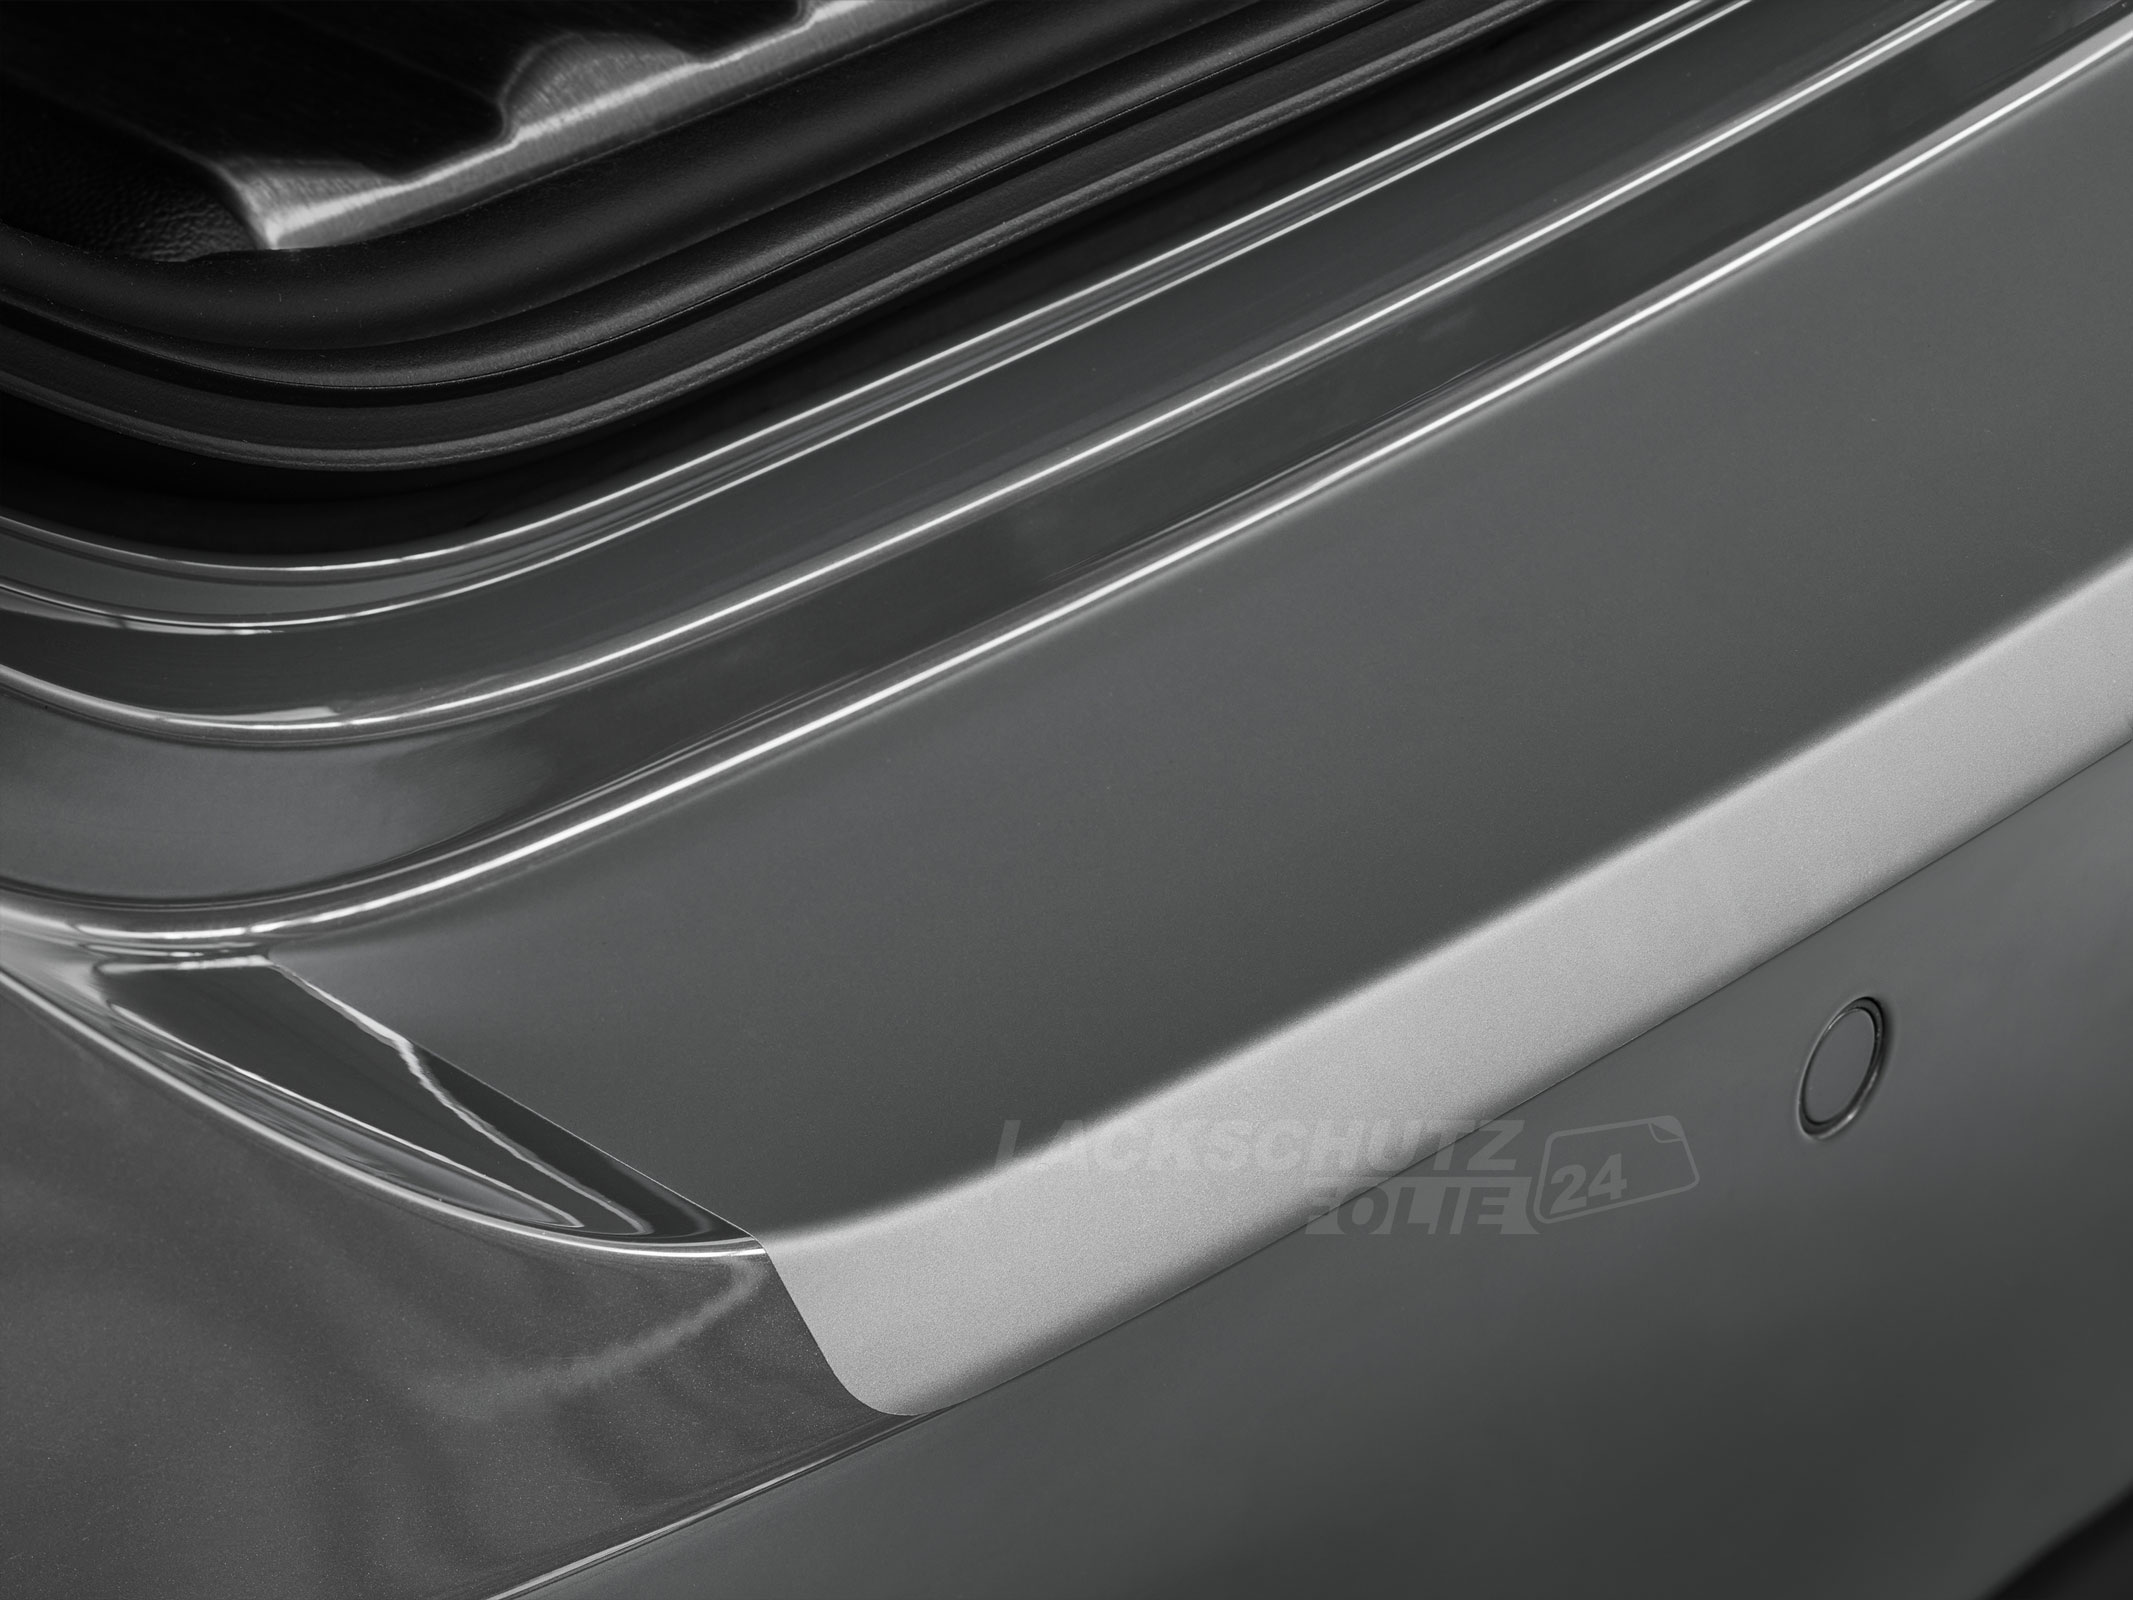 Ladekantenschutzfolie - Transparent Glatt MATT 110 µm stark  für Mazda 3 Schrägheck (IV) ab BJ 03/2019